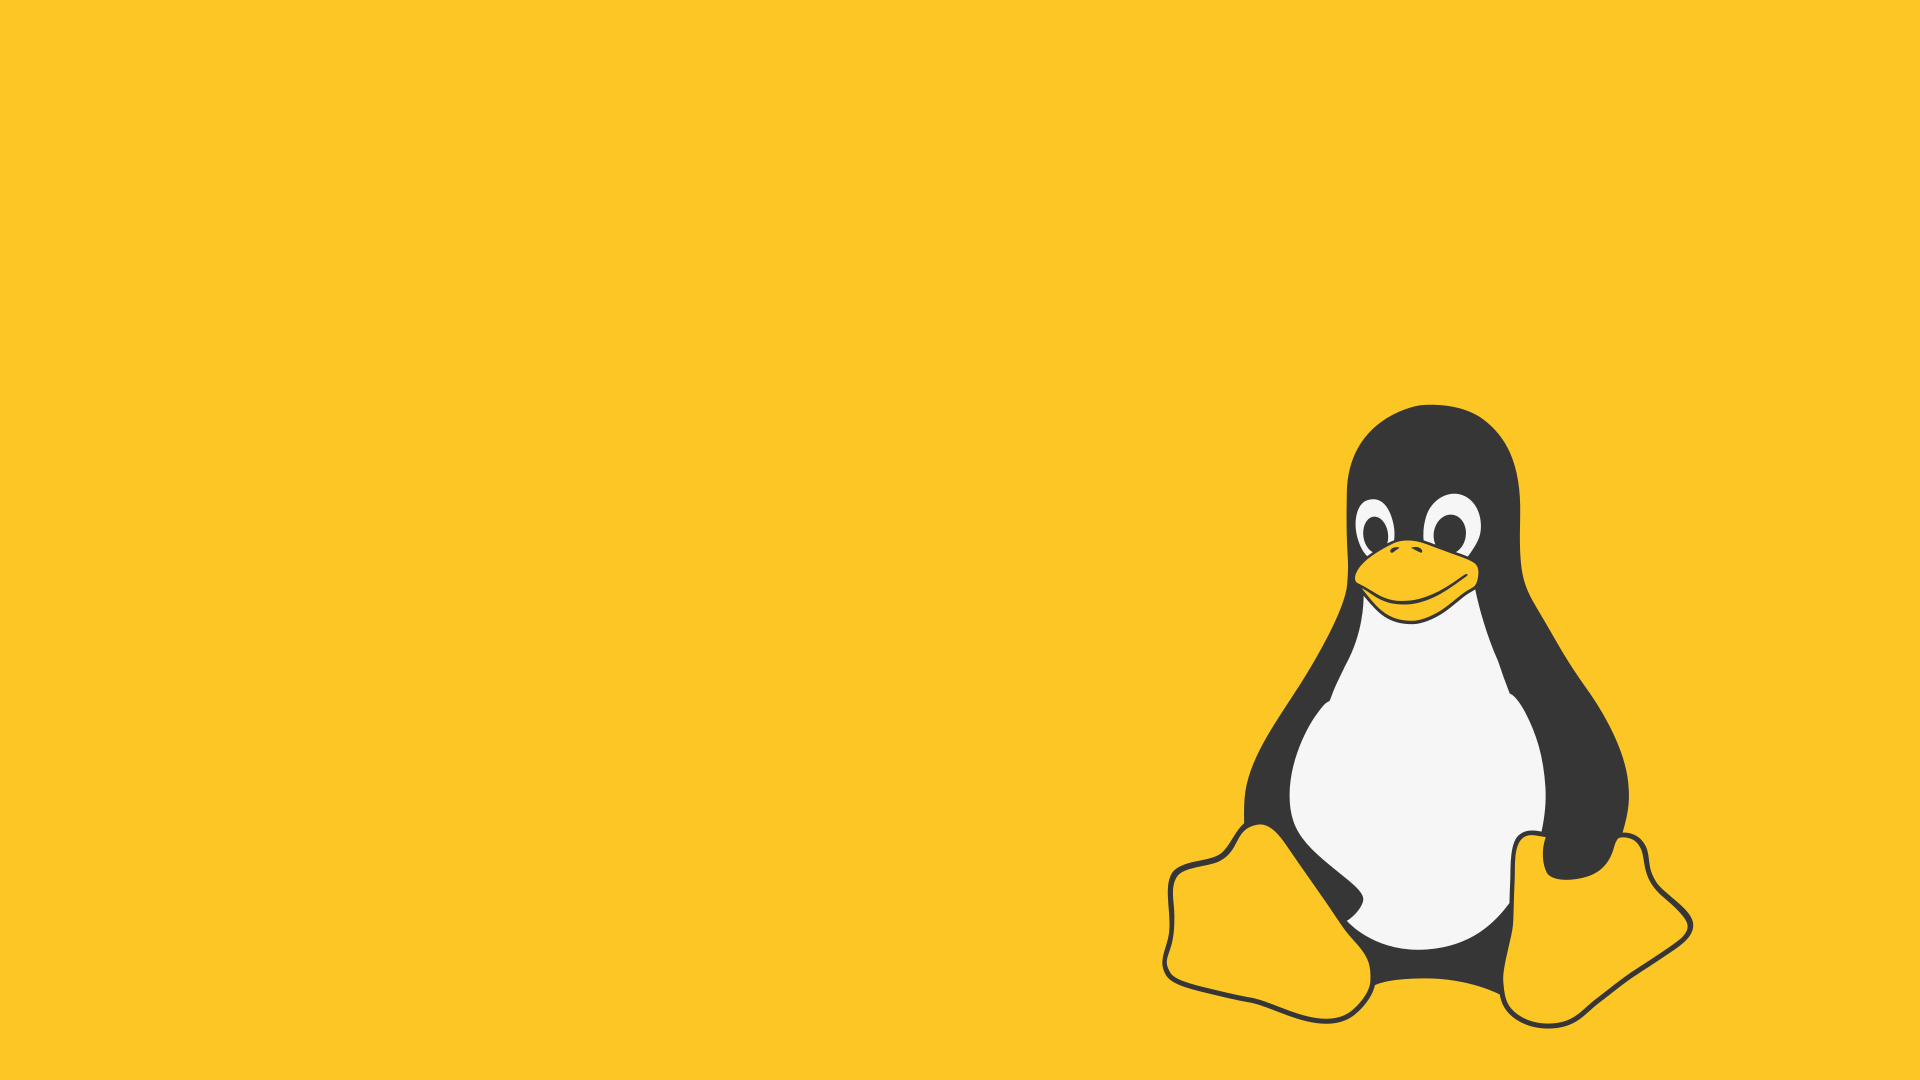 Linux 6.8. Уточка Минимализм. Linux Пингвин. Linux рабочий стол. Linux Пингвин обои.